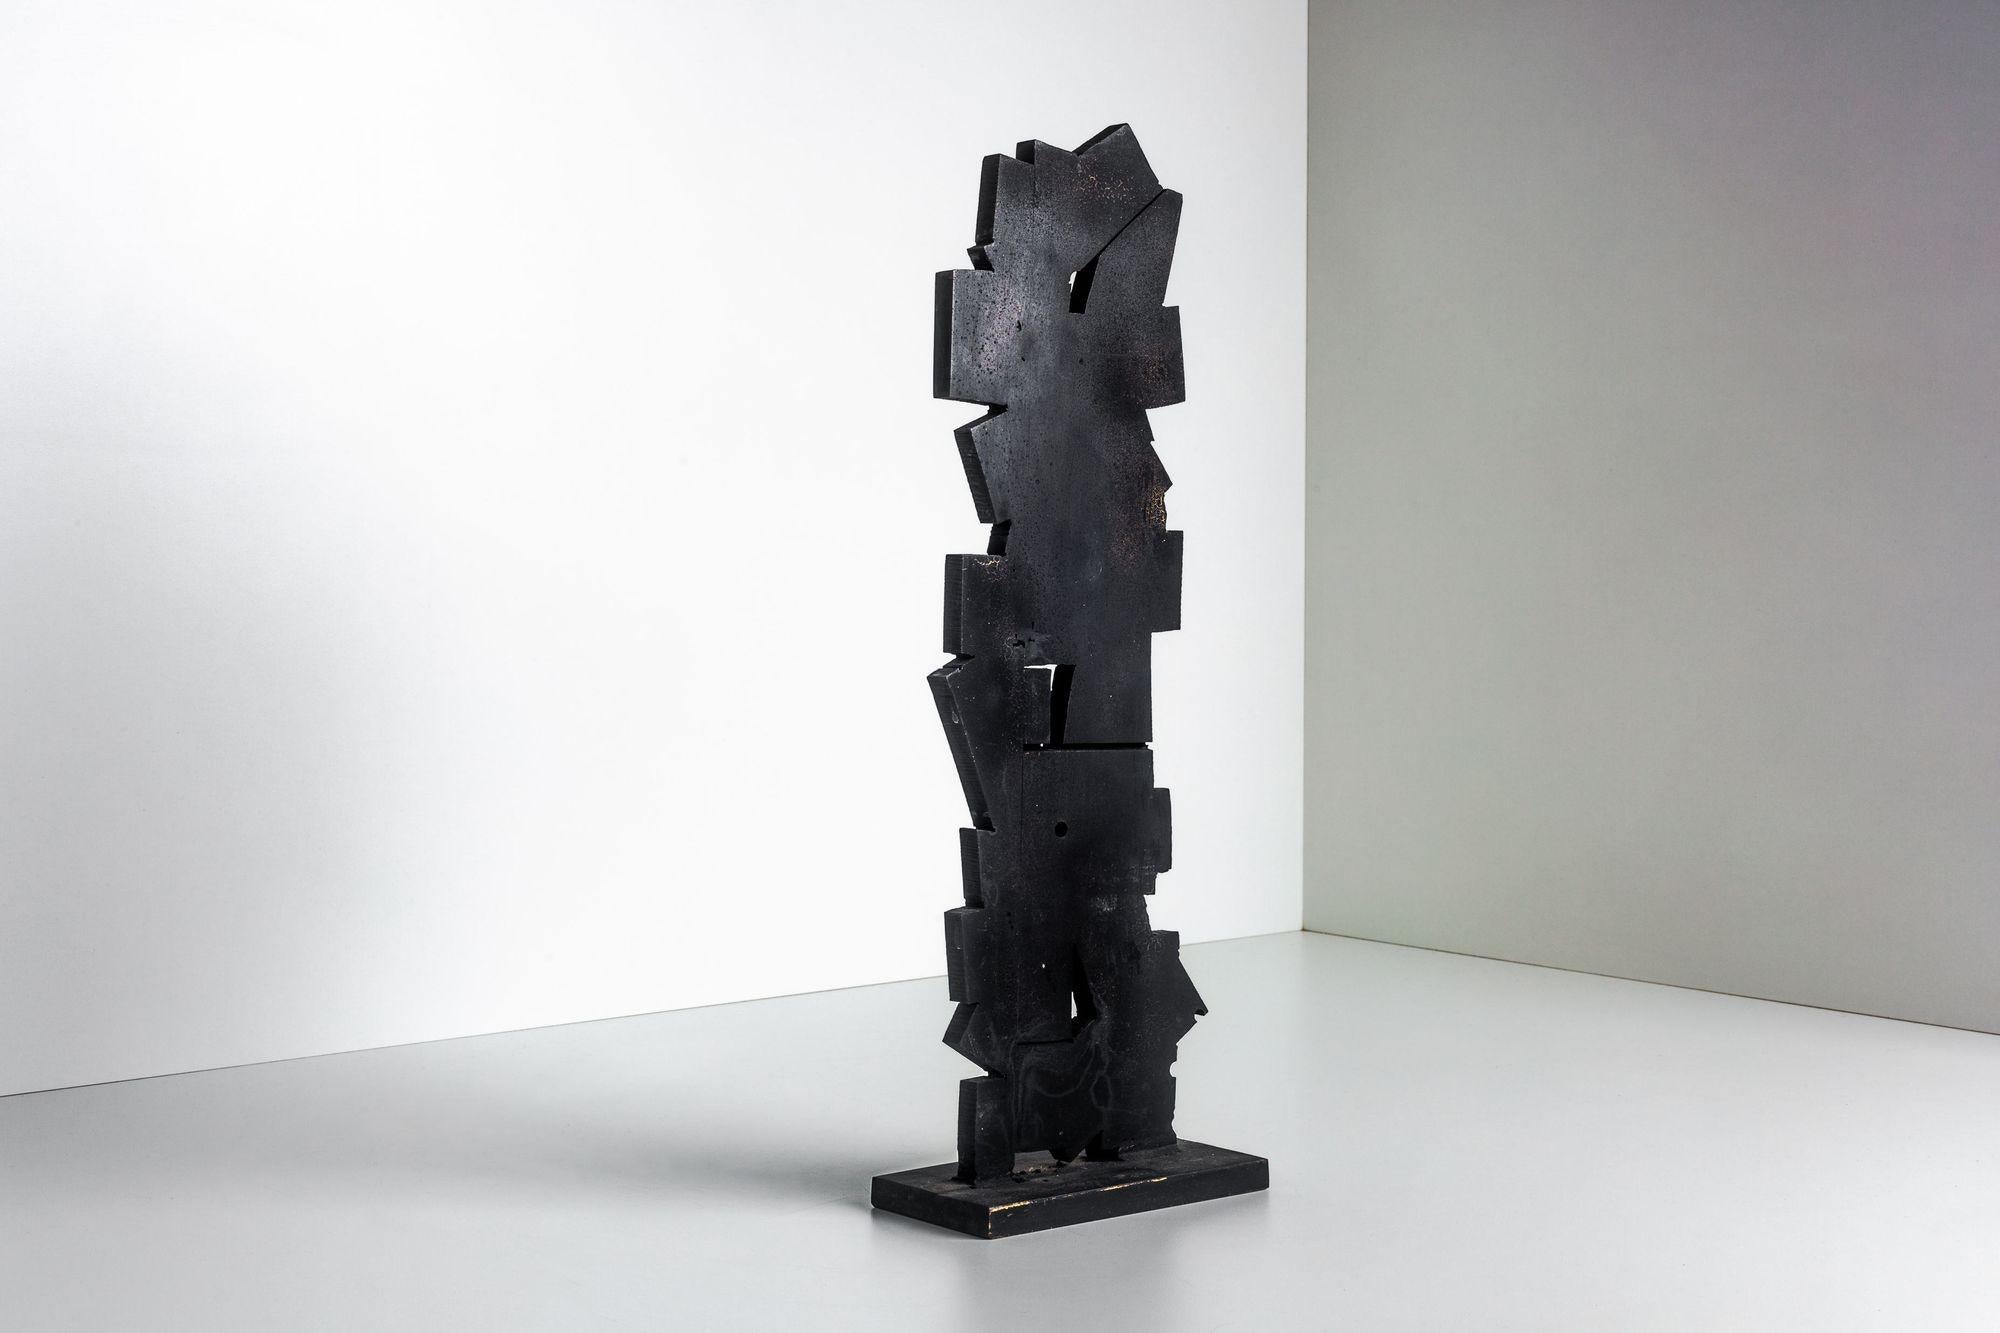 Sculpture de table en bronze de Tony Rosenthal

Sans titre. Sculpture en bronze peint en noir, orientée verticalement, avec trois vides intérieurs aux bords irréguliers soudés à la base, signée, vers 1998.

Collection S de Tony Rosenthal.

Cette